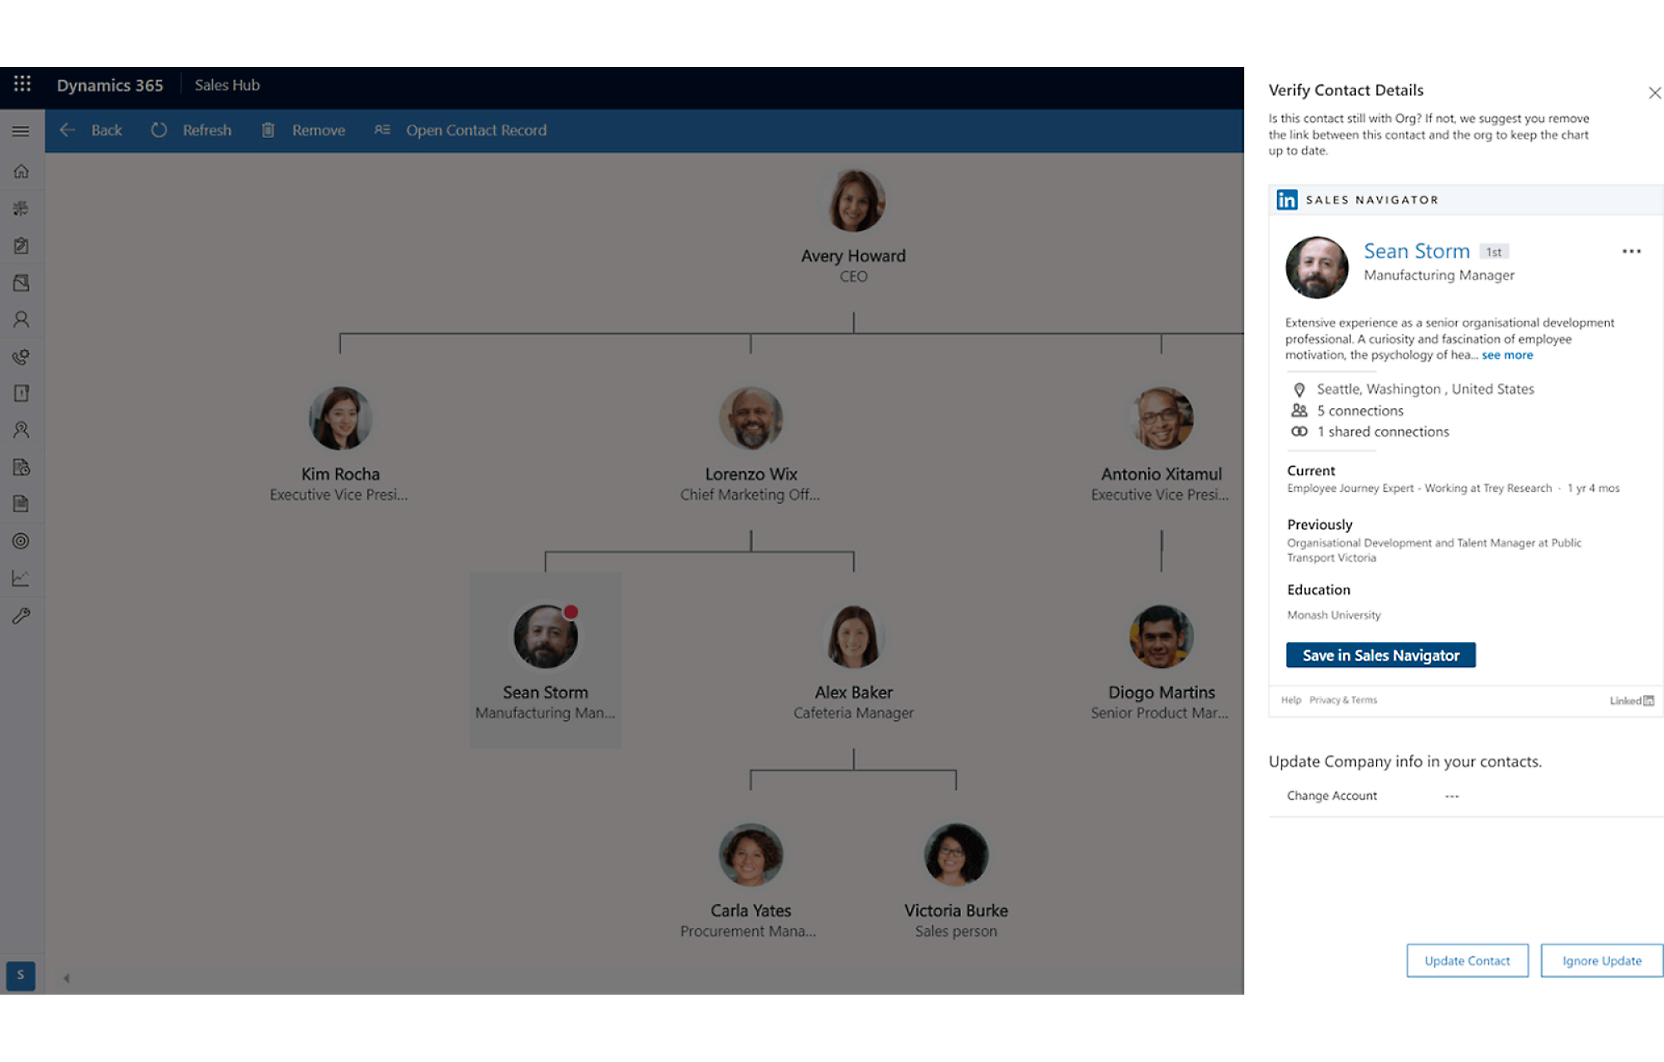 Screenshot einer Dynamics 365-Schnittstelle mit einem Organigramm und einem detaillierten Profil eines Mitarbeiters namens Sean Storm